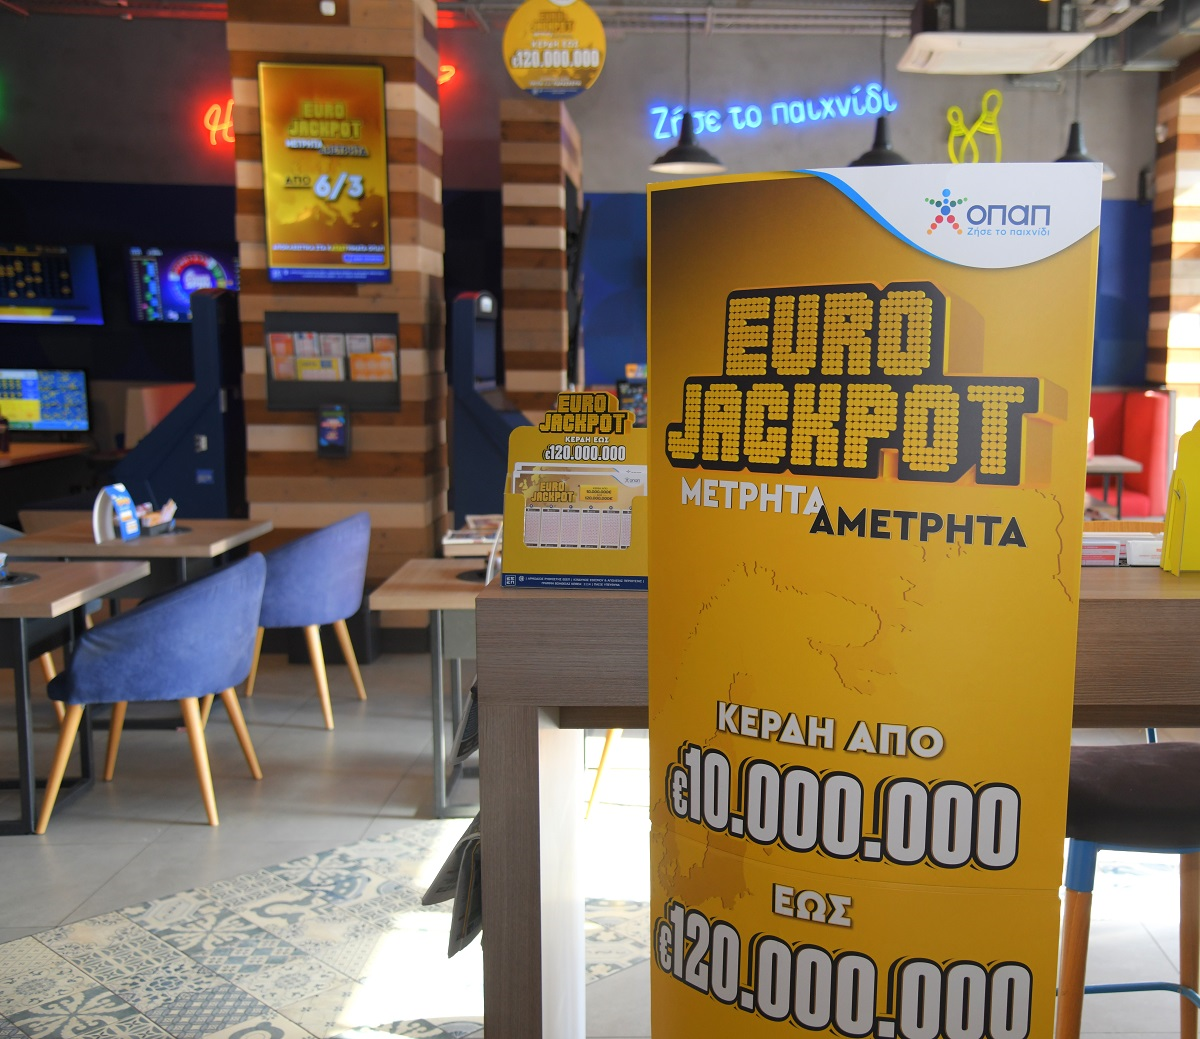 Eurojackpot: Αύριο στις 21:15 η κλήρωση για το έπαθλο ρεκόρ των 73 εκατ. ευρώ στην πρώτη κατηγορία – Κατάθεση δελτίων αποκλειστικά στα καταστήματα ΟΠΑΠ